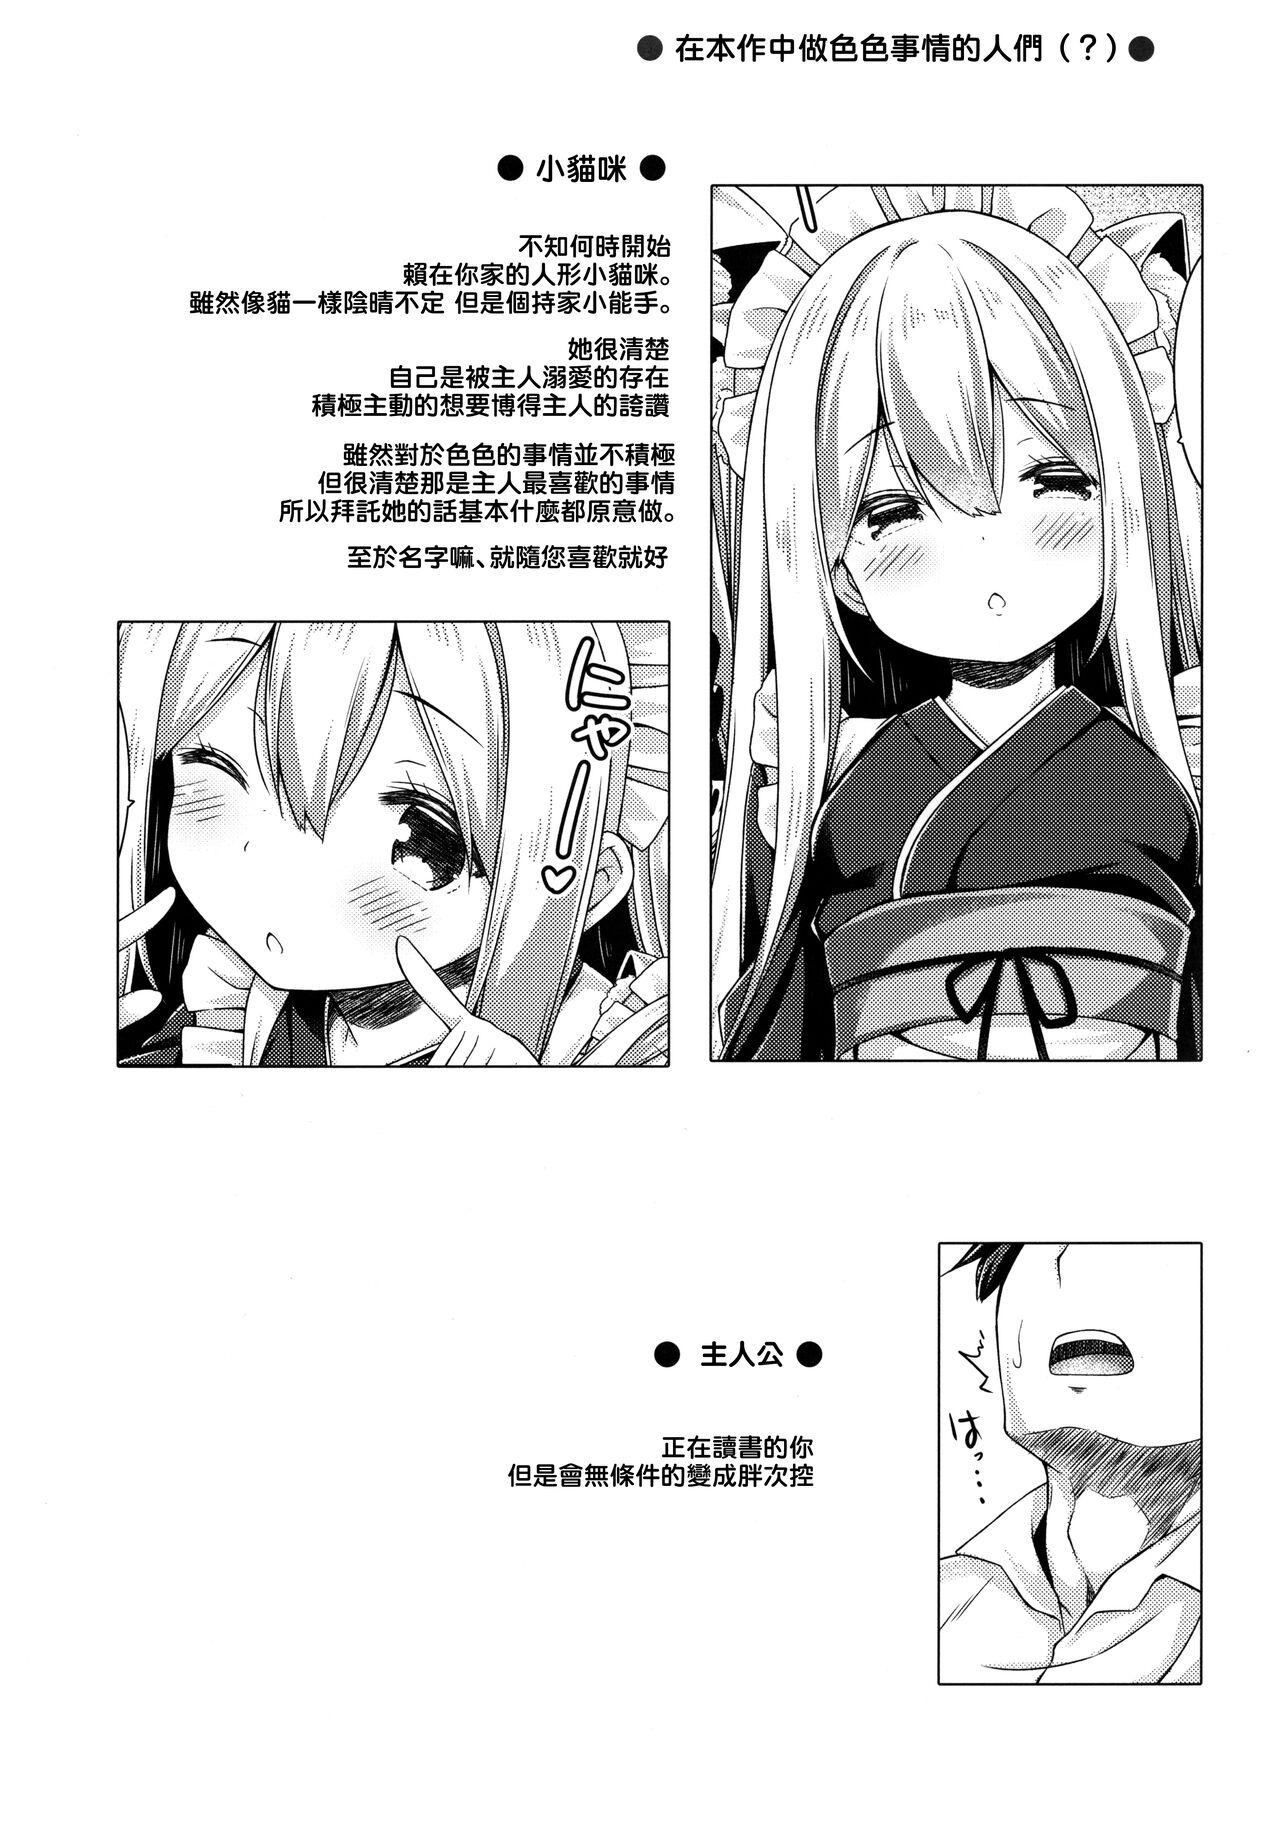 Off Anata no Neko-chan Maid. - Original Vergon - Page 4